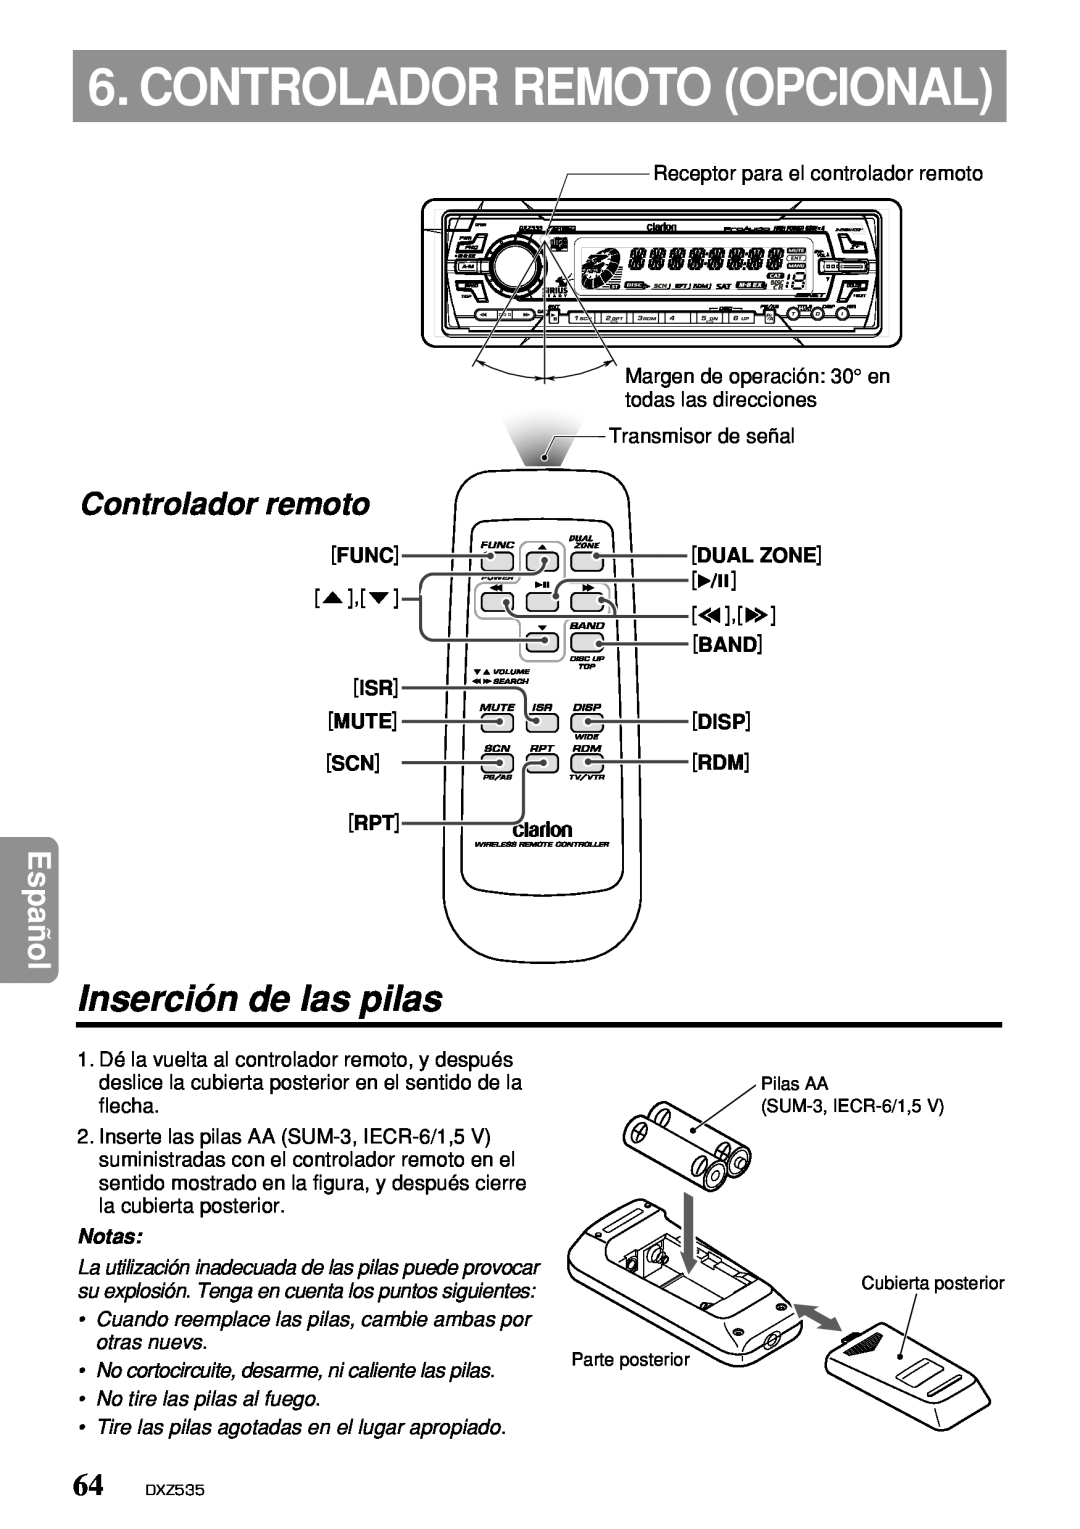 Clarion DXZ535 owner manual Controlador Remoto Opcional, Inserción de las pilas, Controlador remoto, Español, Notas 